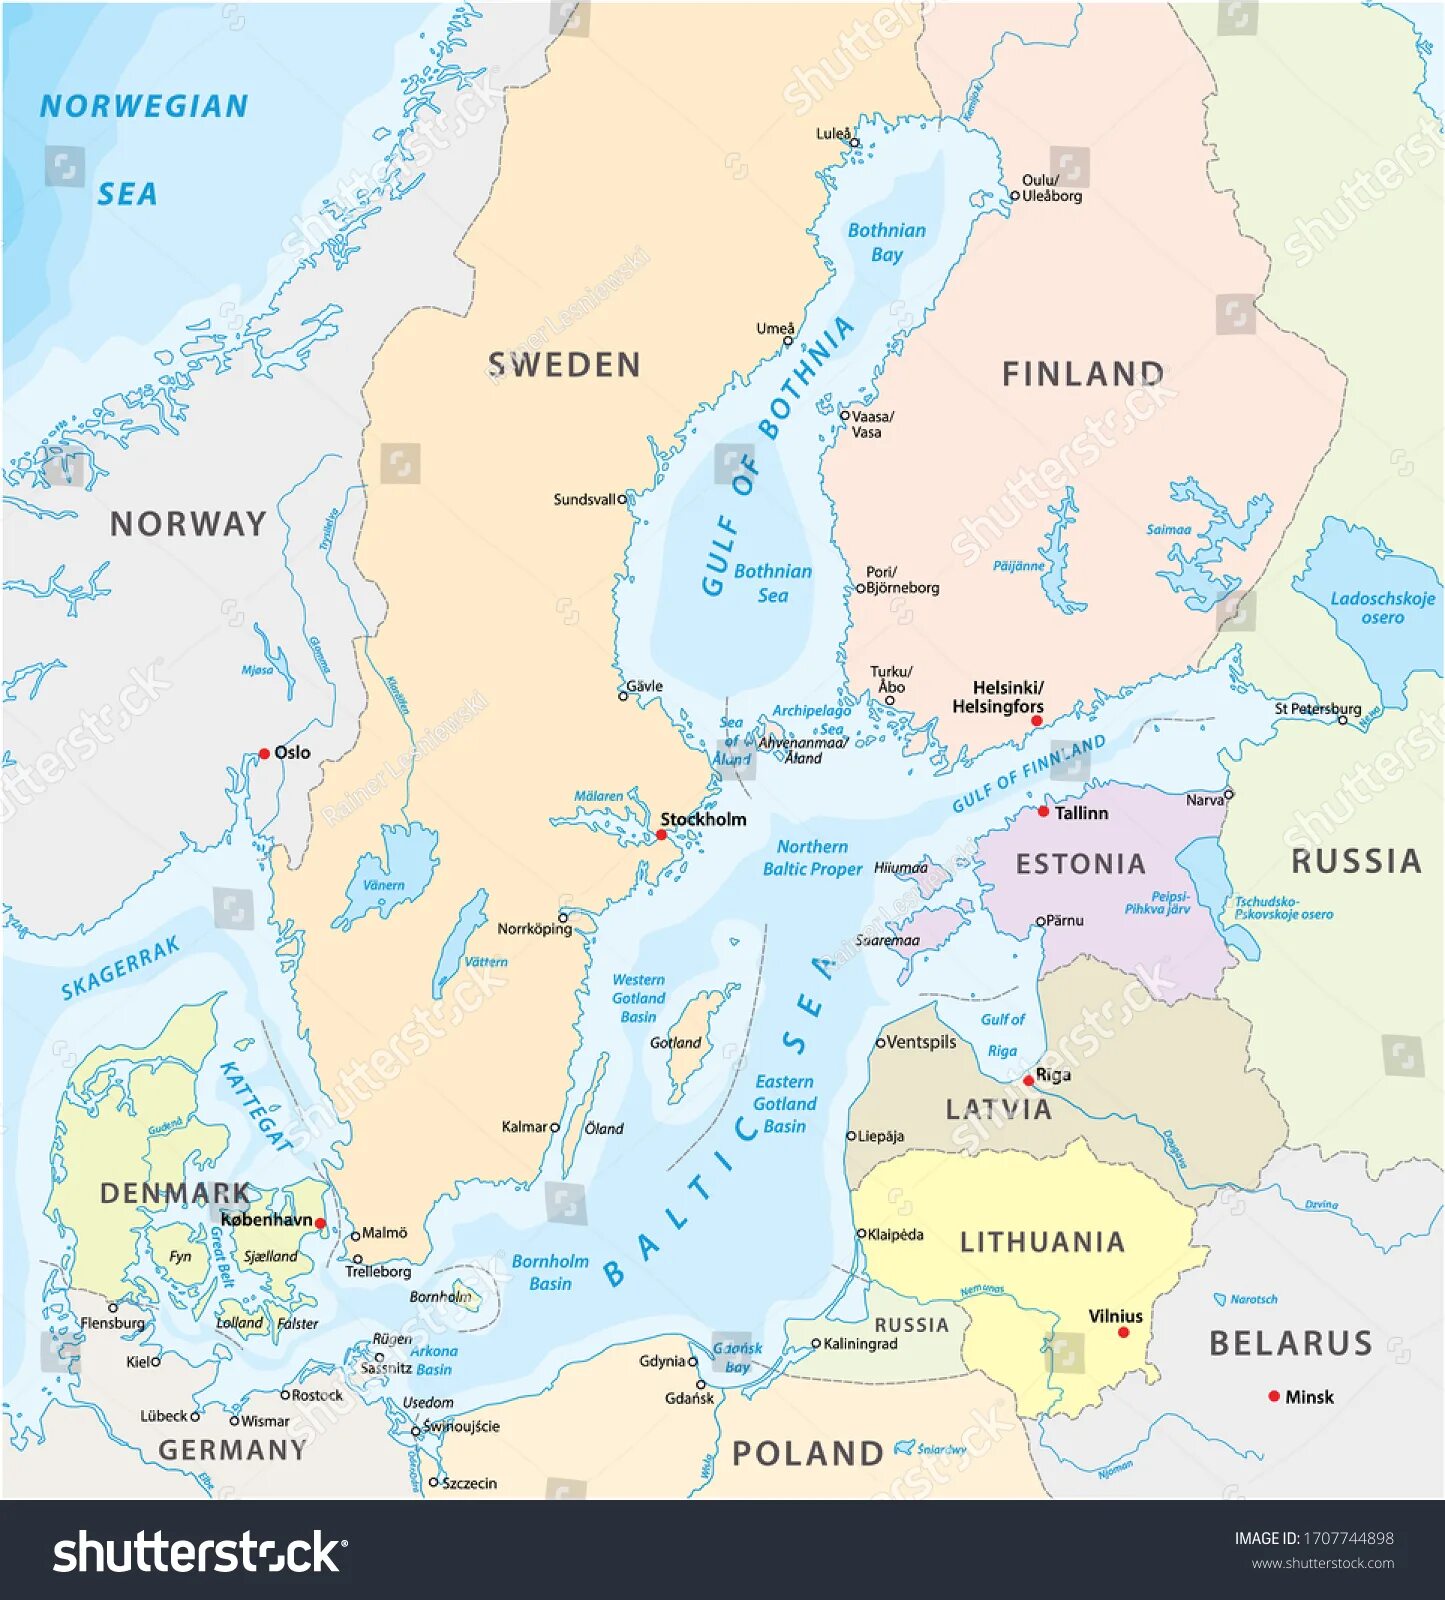 Какая страна расположена на балтийском море. Балтийское море на карте. Балтика на карте. Балтийское море карта со странами. Балтийское море политическая карта.